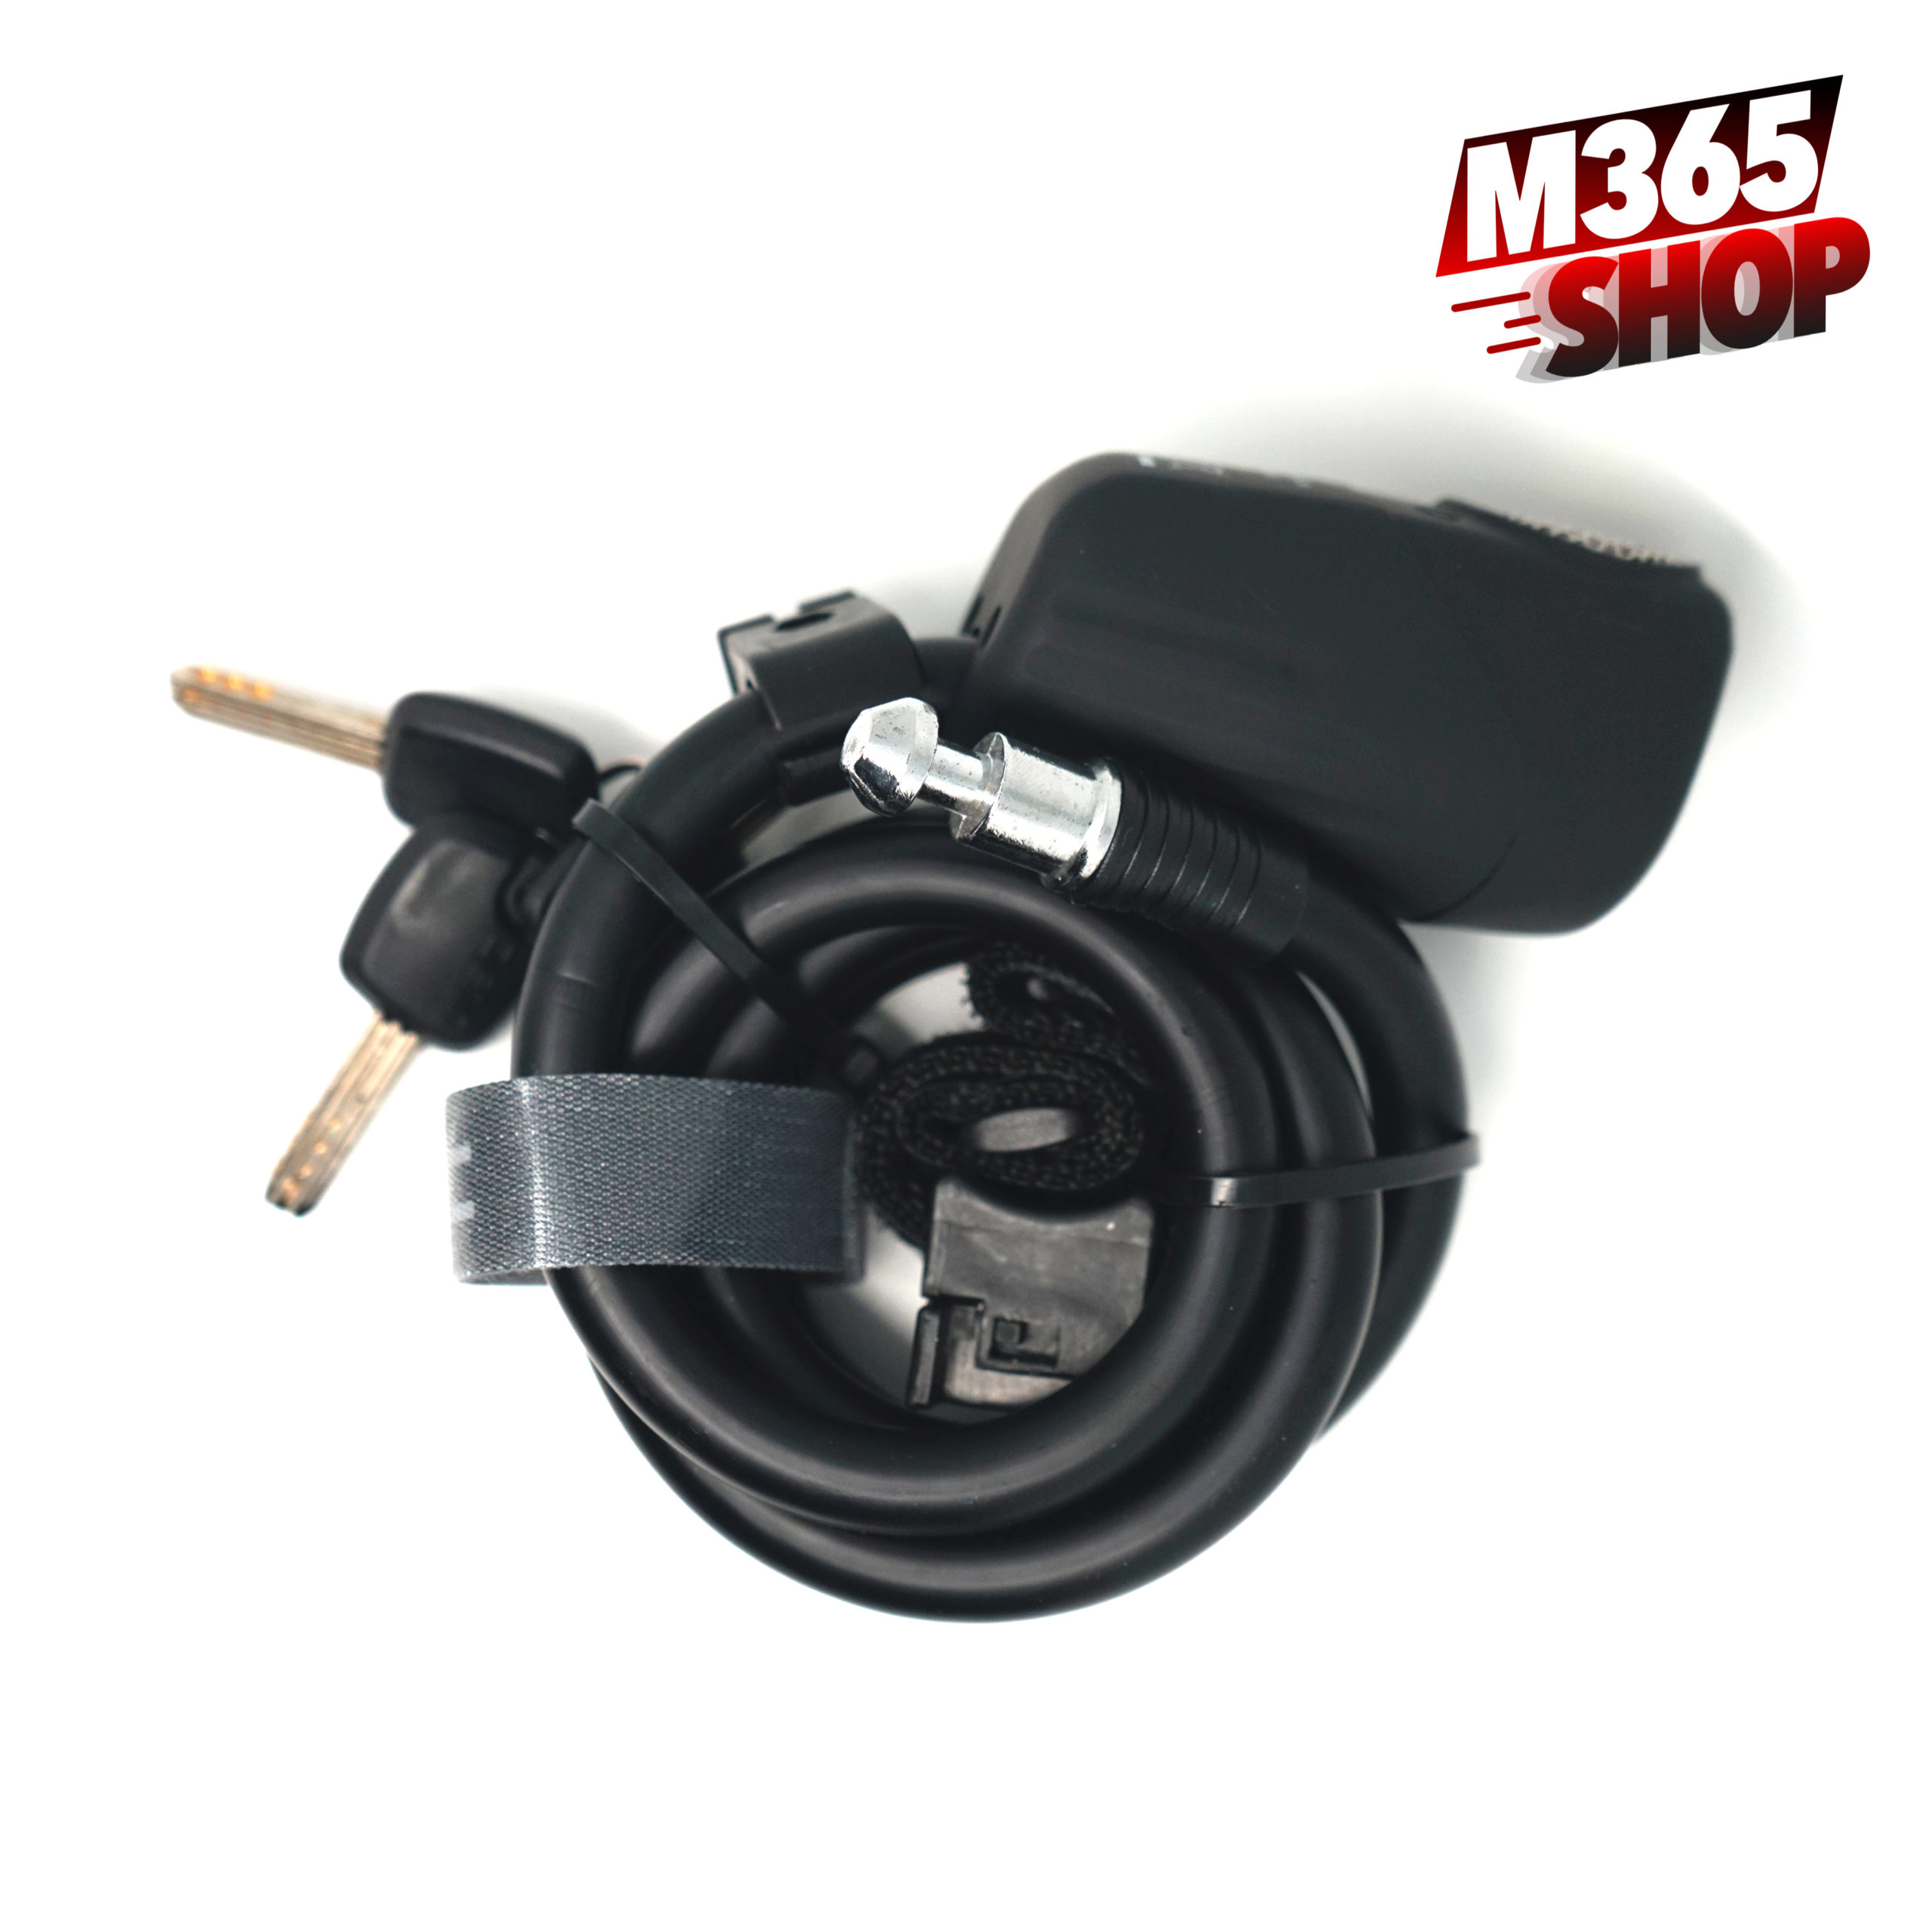 Antivol velo moto trotinette electrique cable en acier avec cles